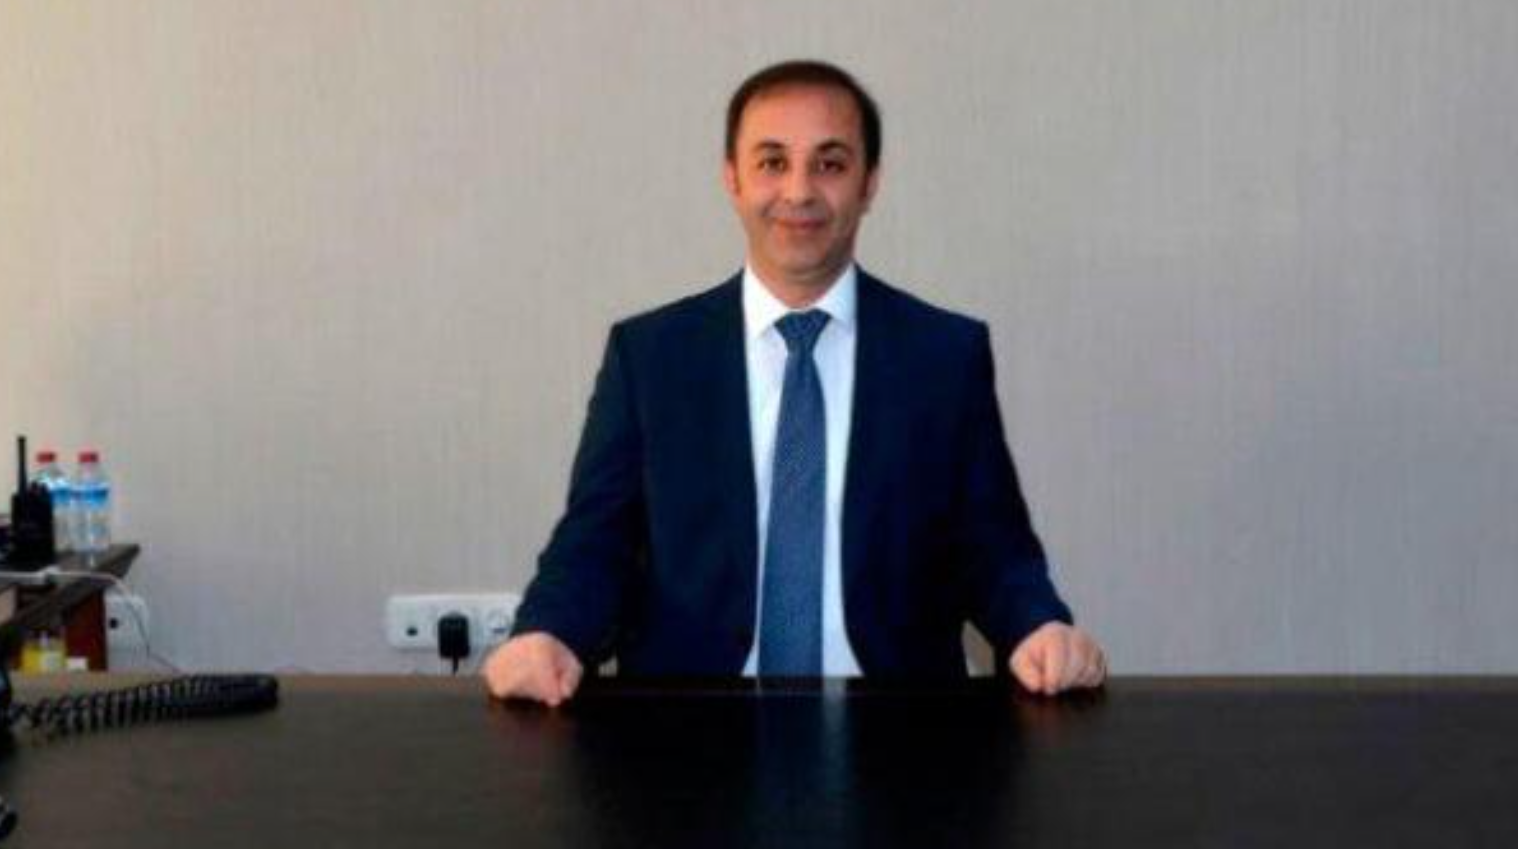 Adana İl Emniyet Müdürü Ahmet Hakan Arıkan kimdir?  Ahmet Hakan Arıkan nereli ve kaç yaşındadır?